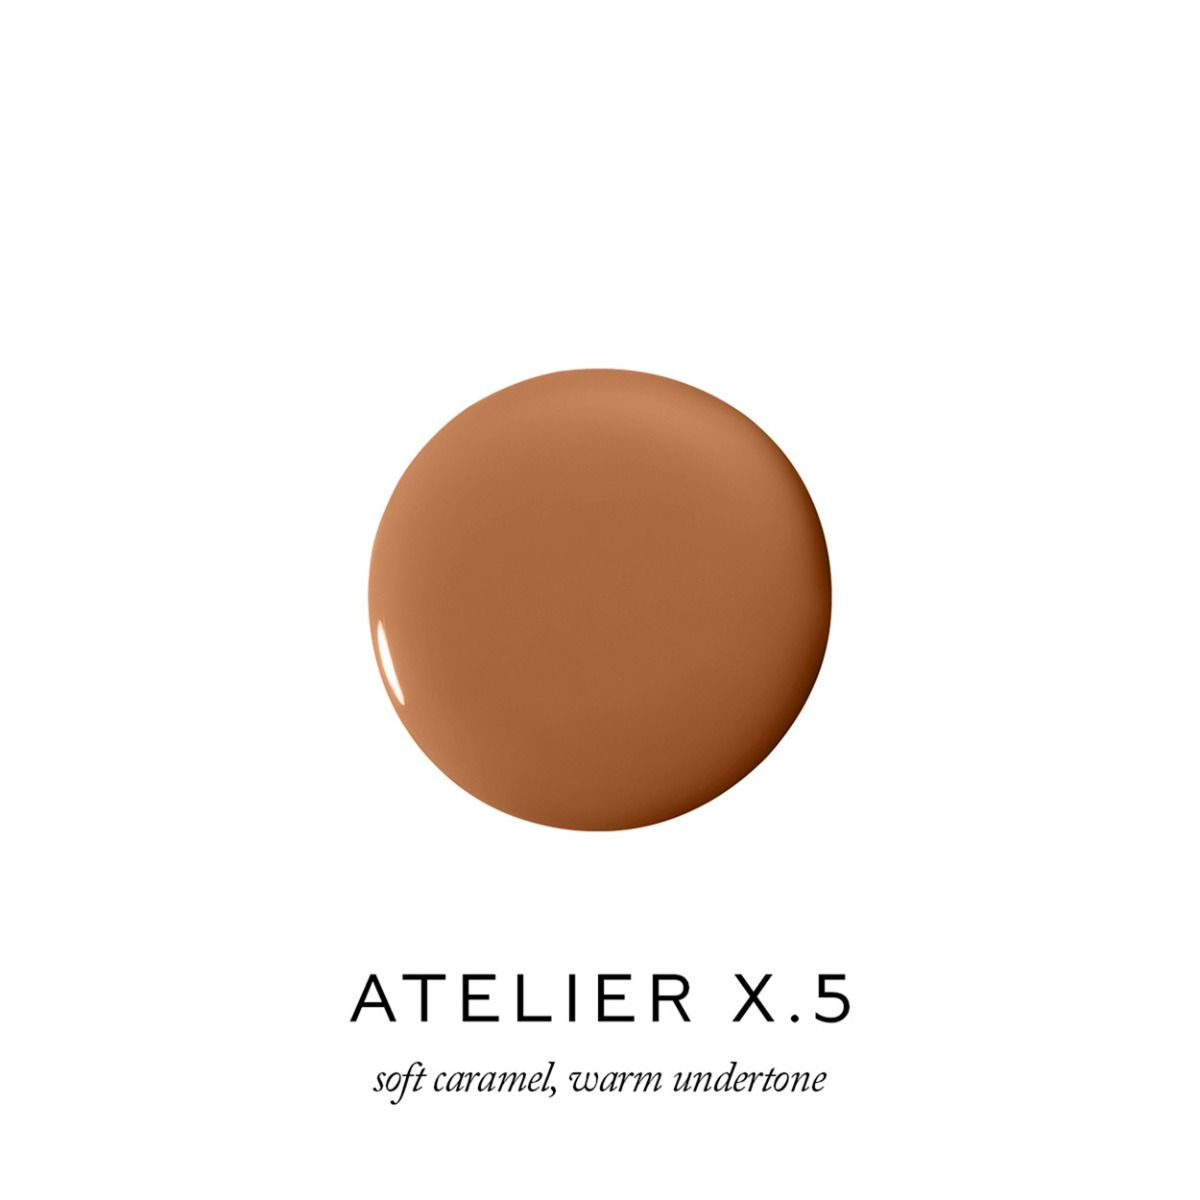 Atelier X.5